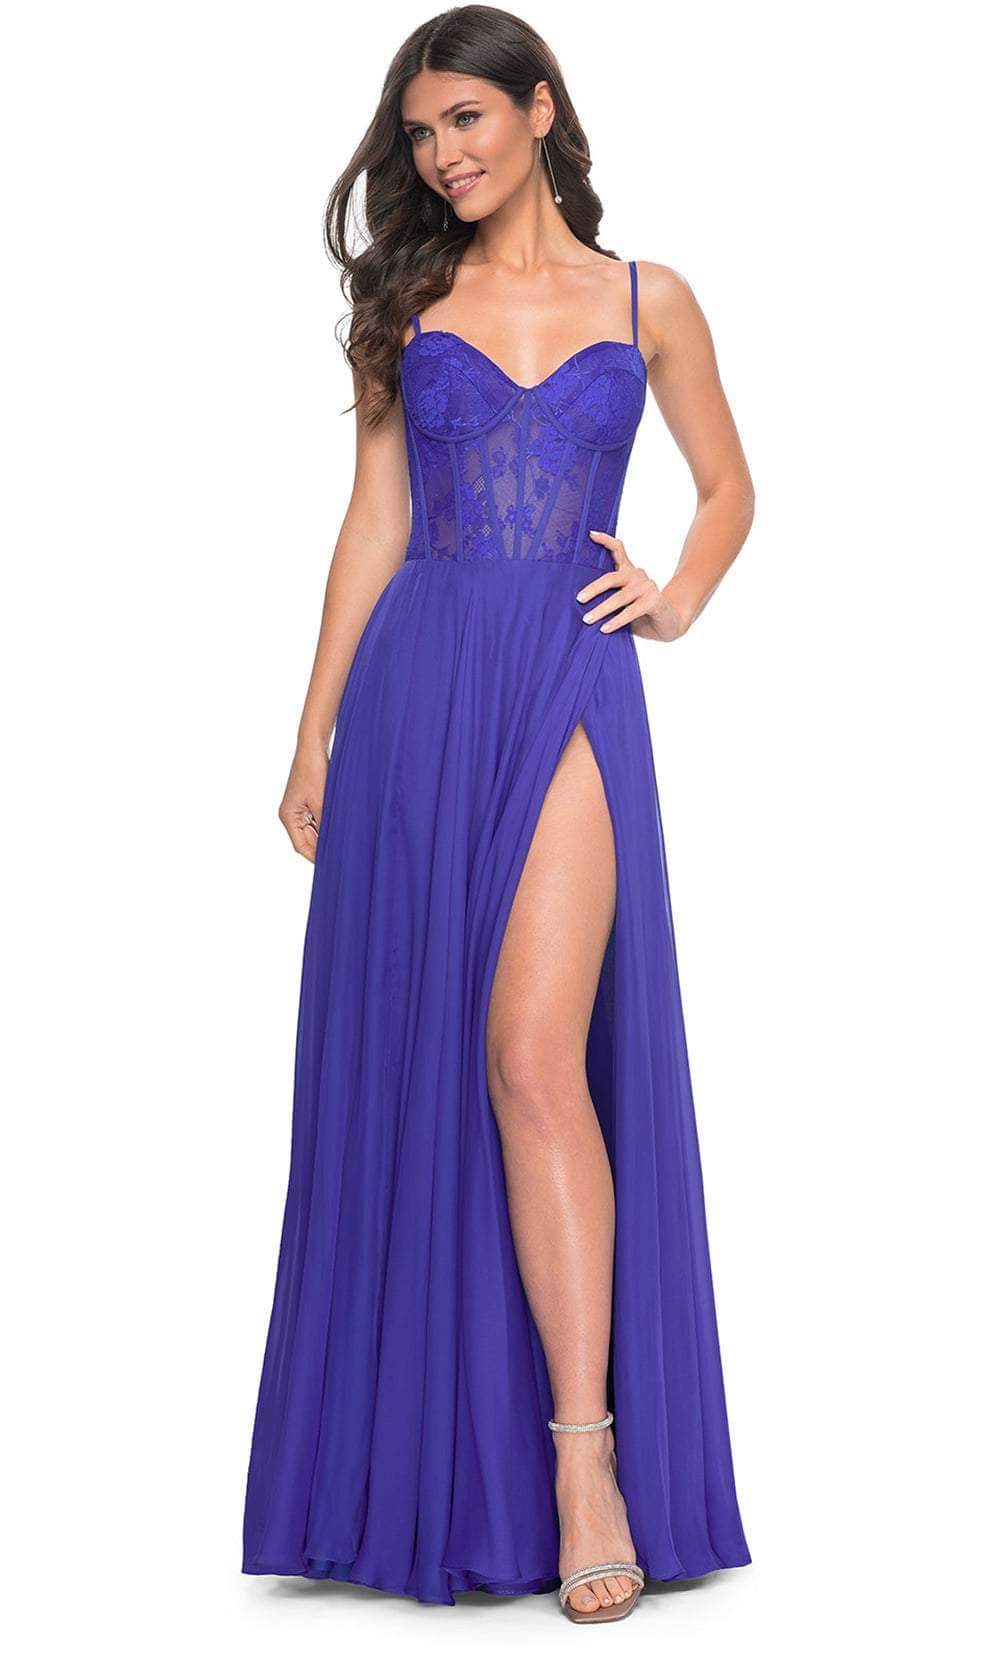 La Femme 32276 - Bustier High Slit Prom Dress Evening Dresses 00 /  Royal Blue